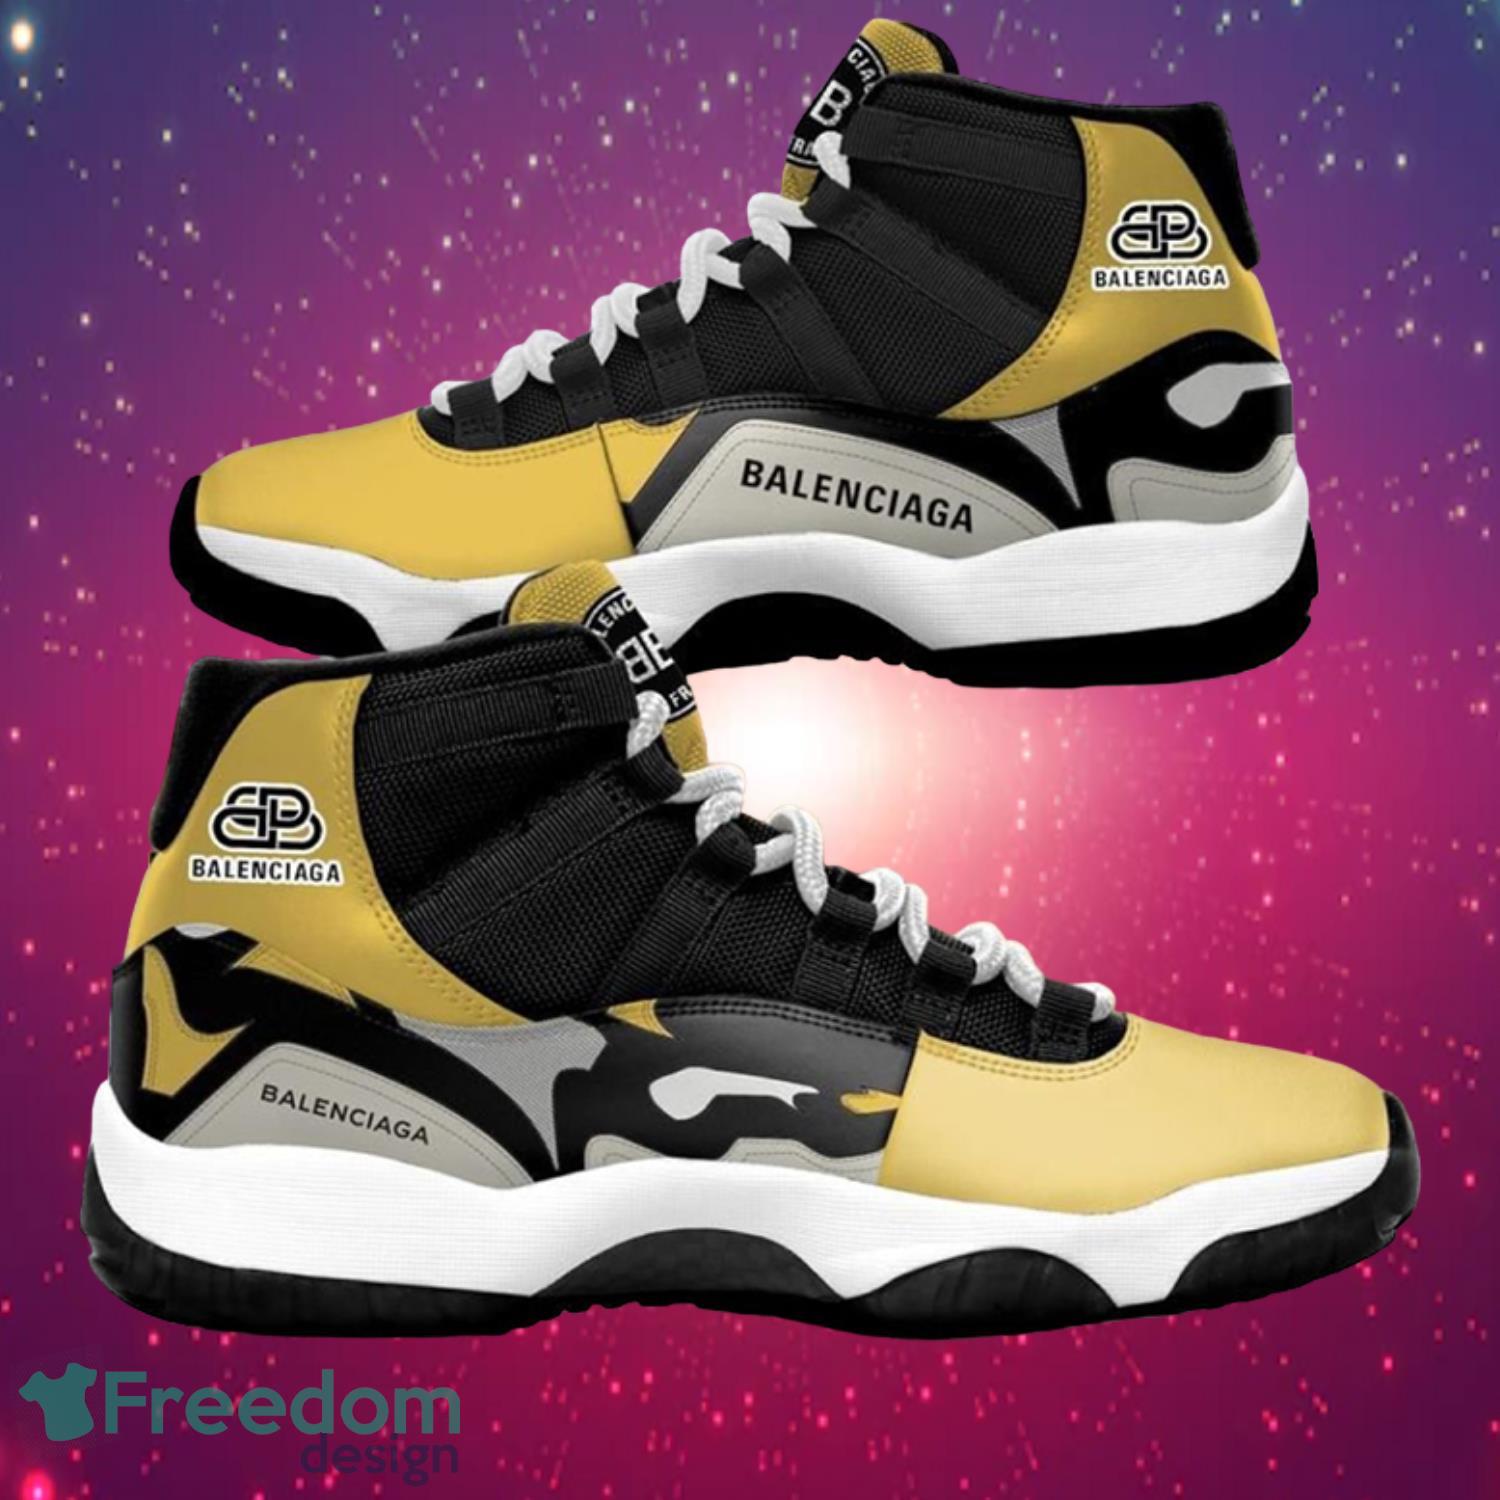 Balenciaga Yellow Air Jordan 11 Shoes Product Photo 1